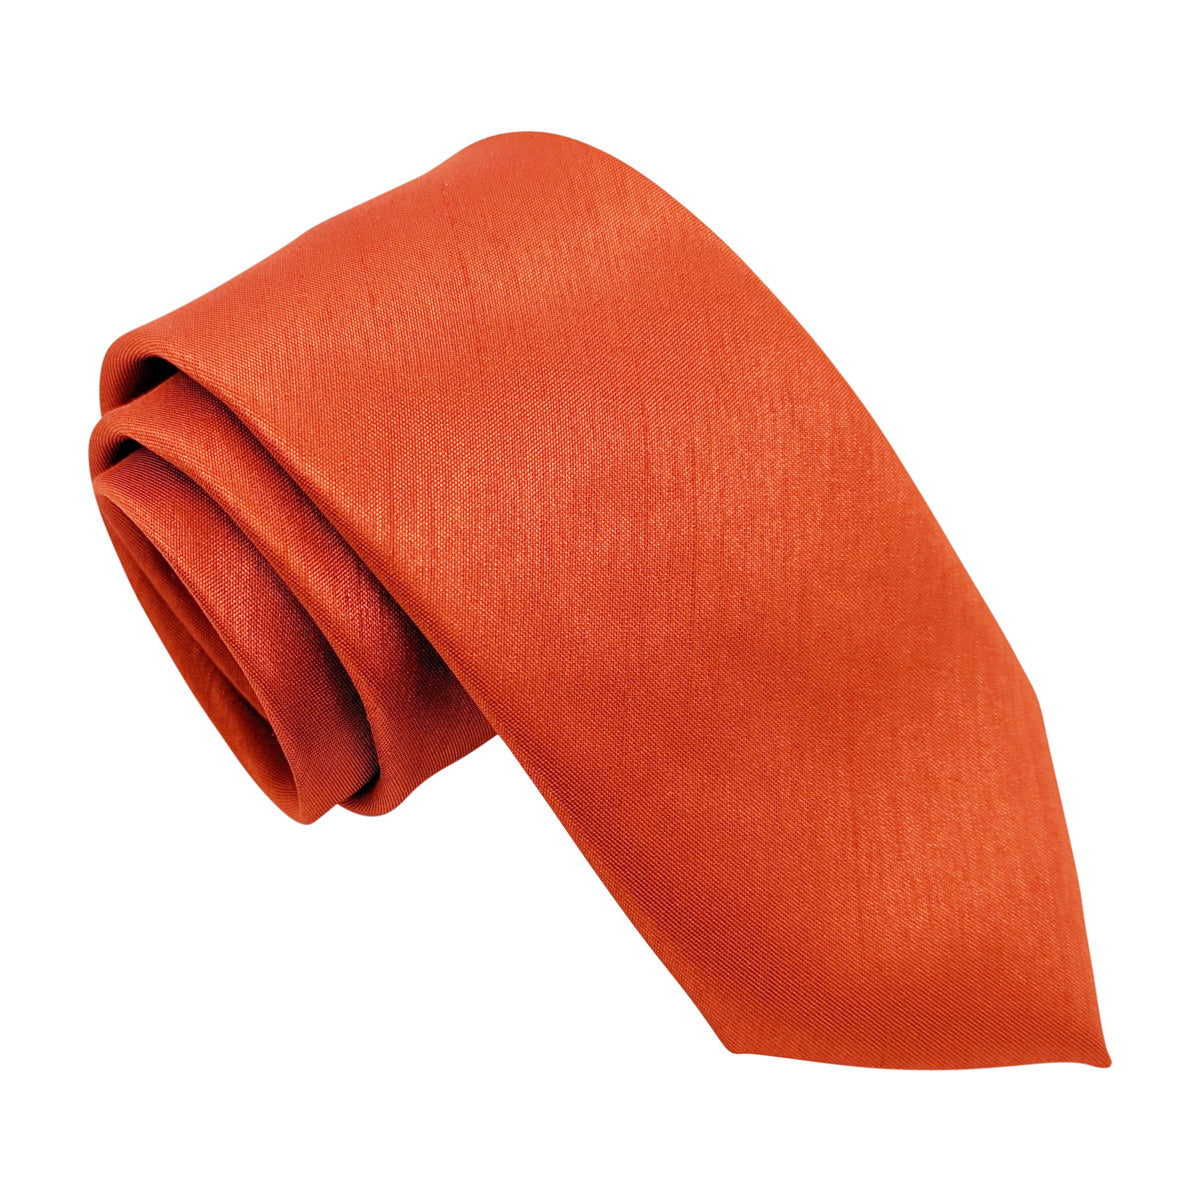 Orange Wedding Tie Swatch Pack